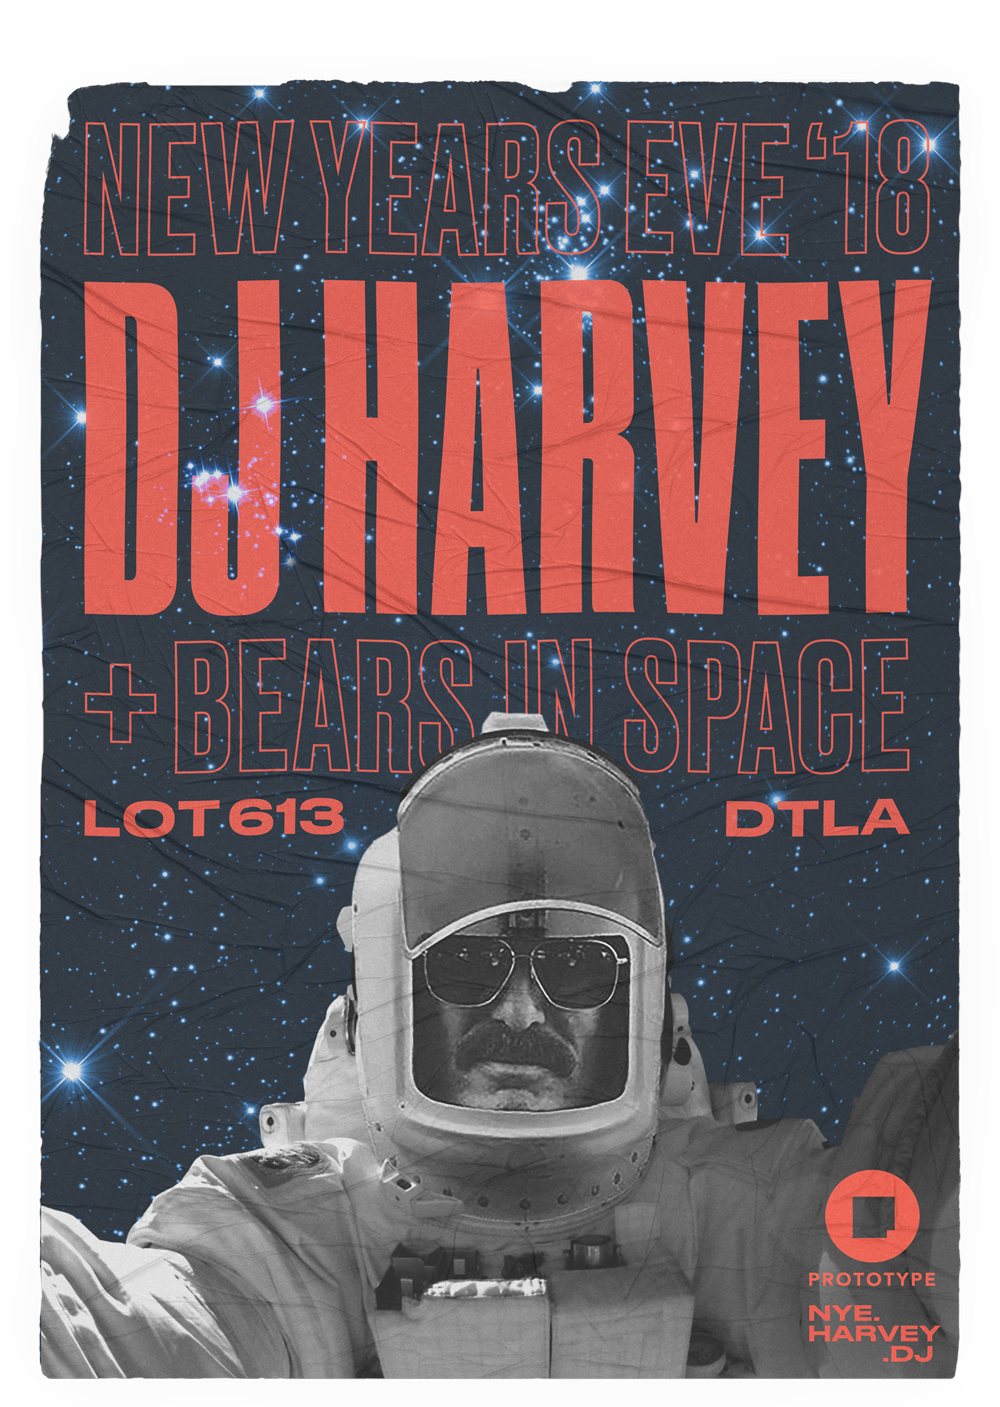 New Year's Eve 2018: DJ Harvey + Bears in Space @ Lot 613, DTLA